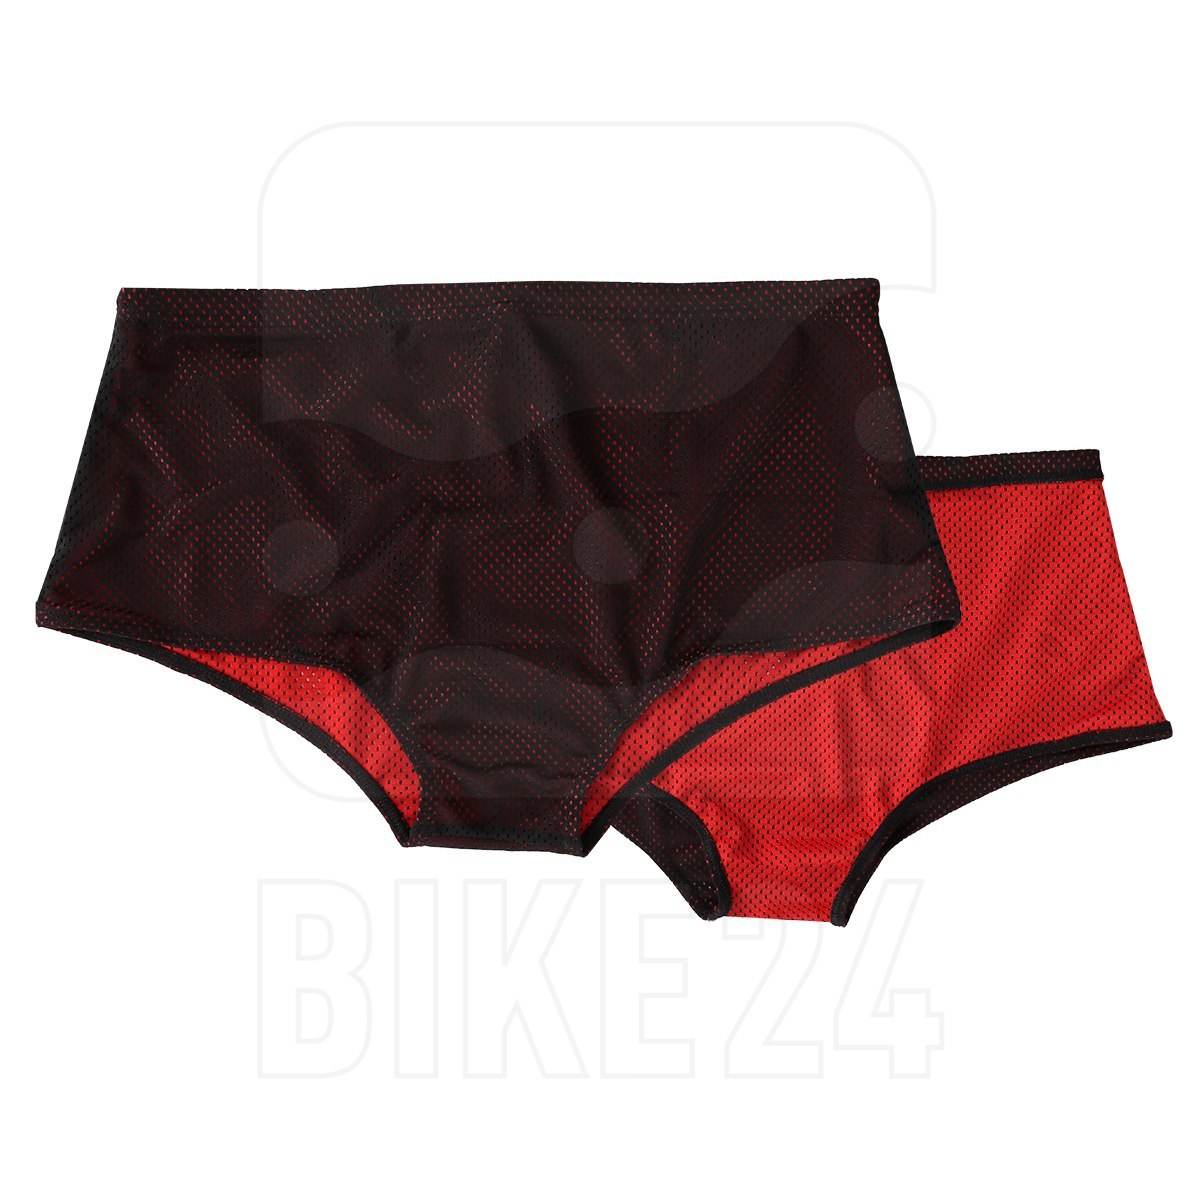 Produktbild von FINIS, Inc. Reversible Drag Suit Wendehose für Widerstandtraining - black/red